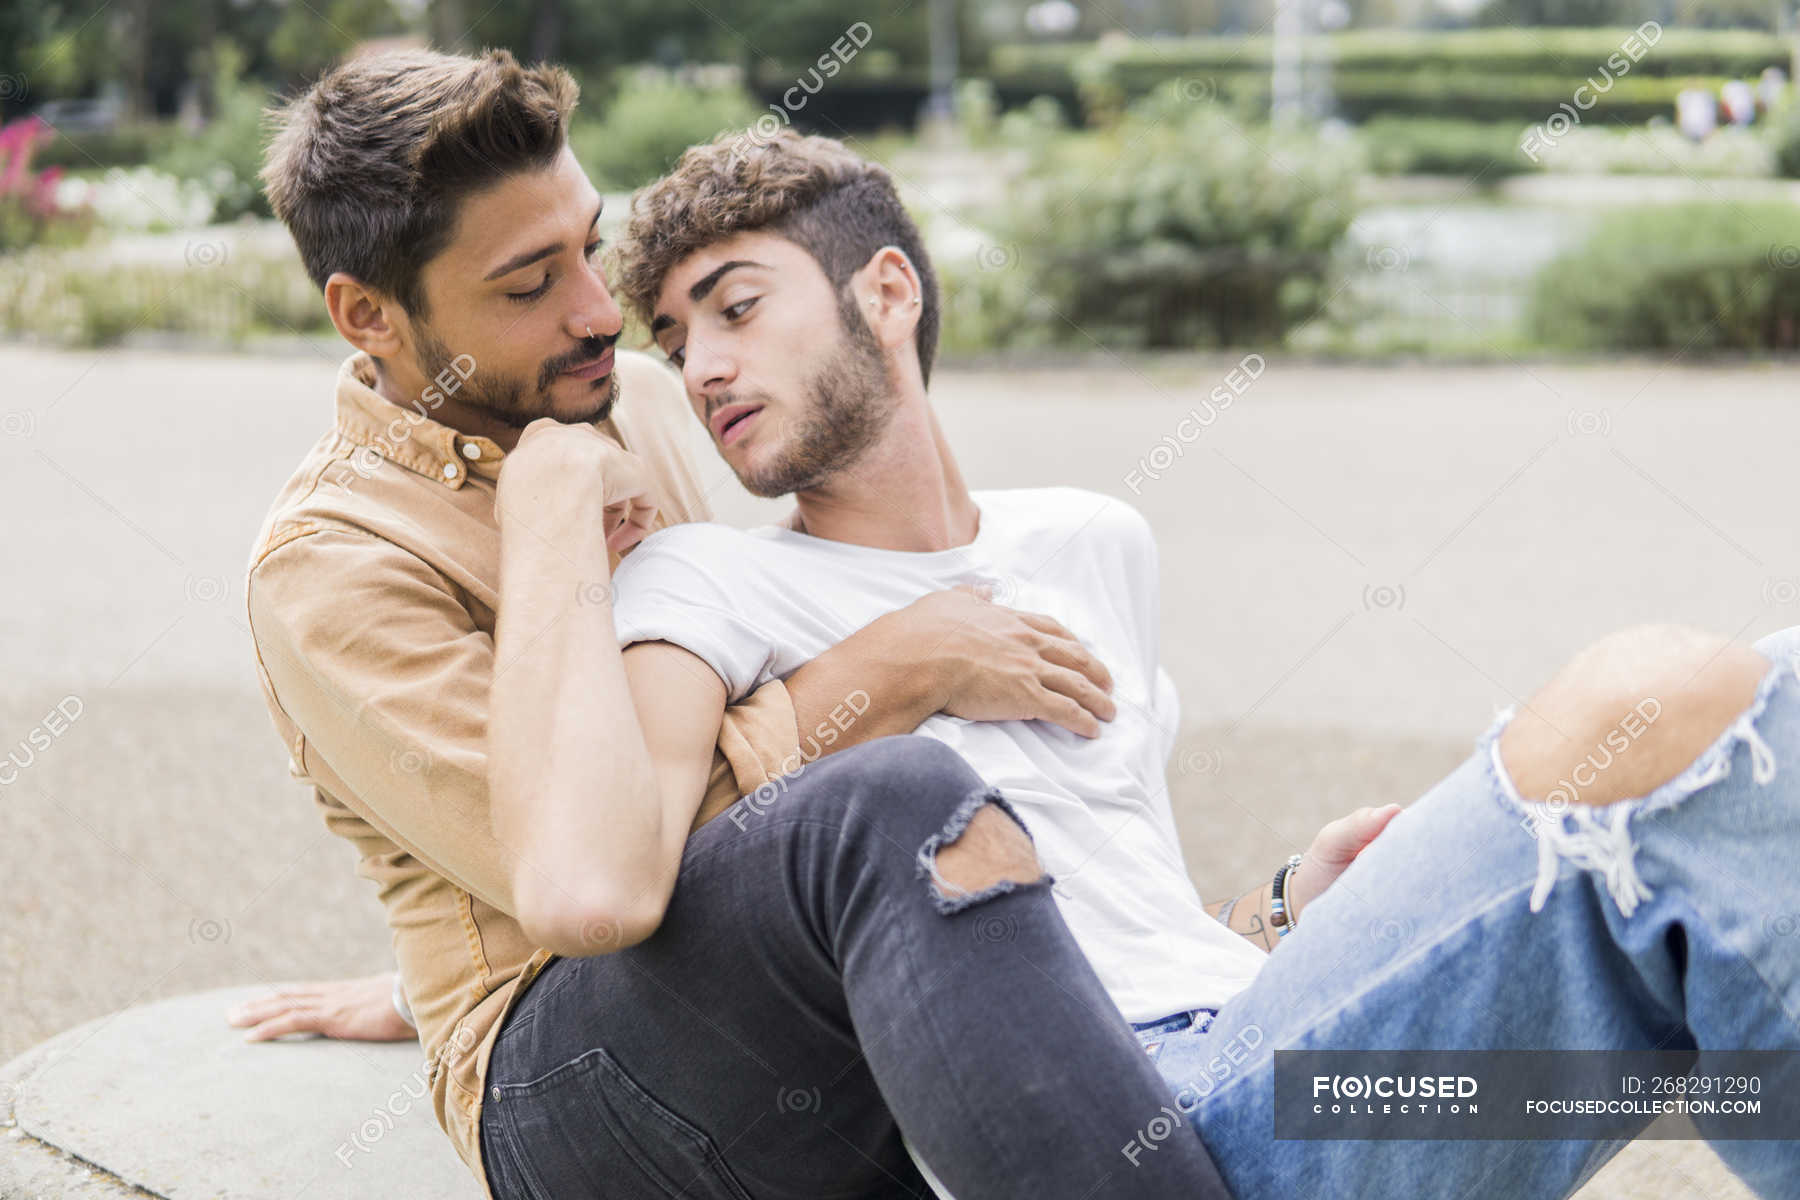 lørenskog gay dating single menn i geilo